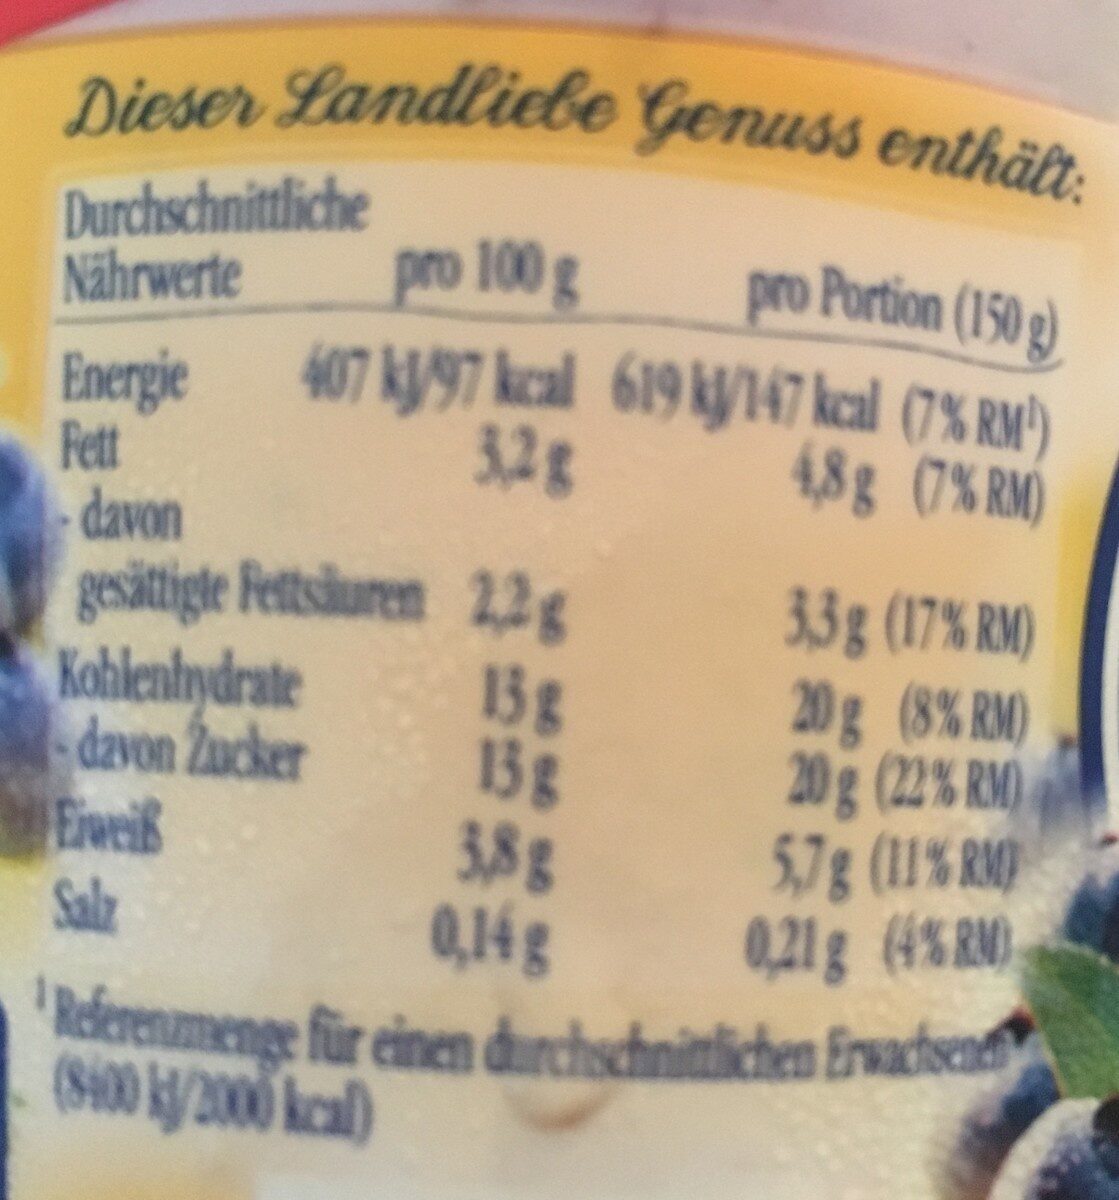 Joghurt mit erlesenen heidelbeeren - Nutrition facts - de